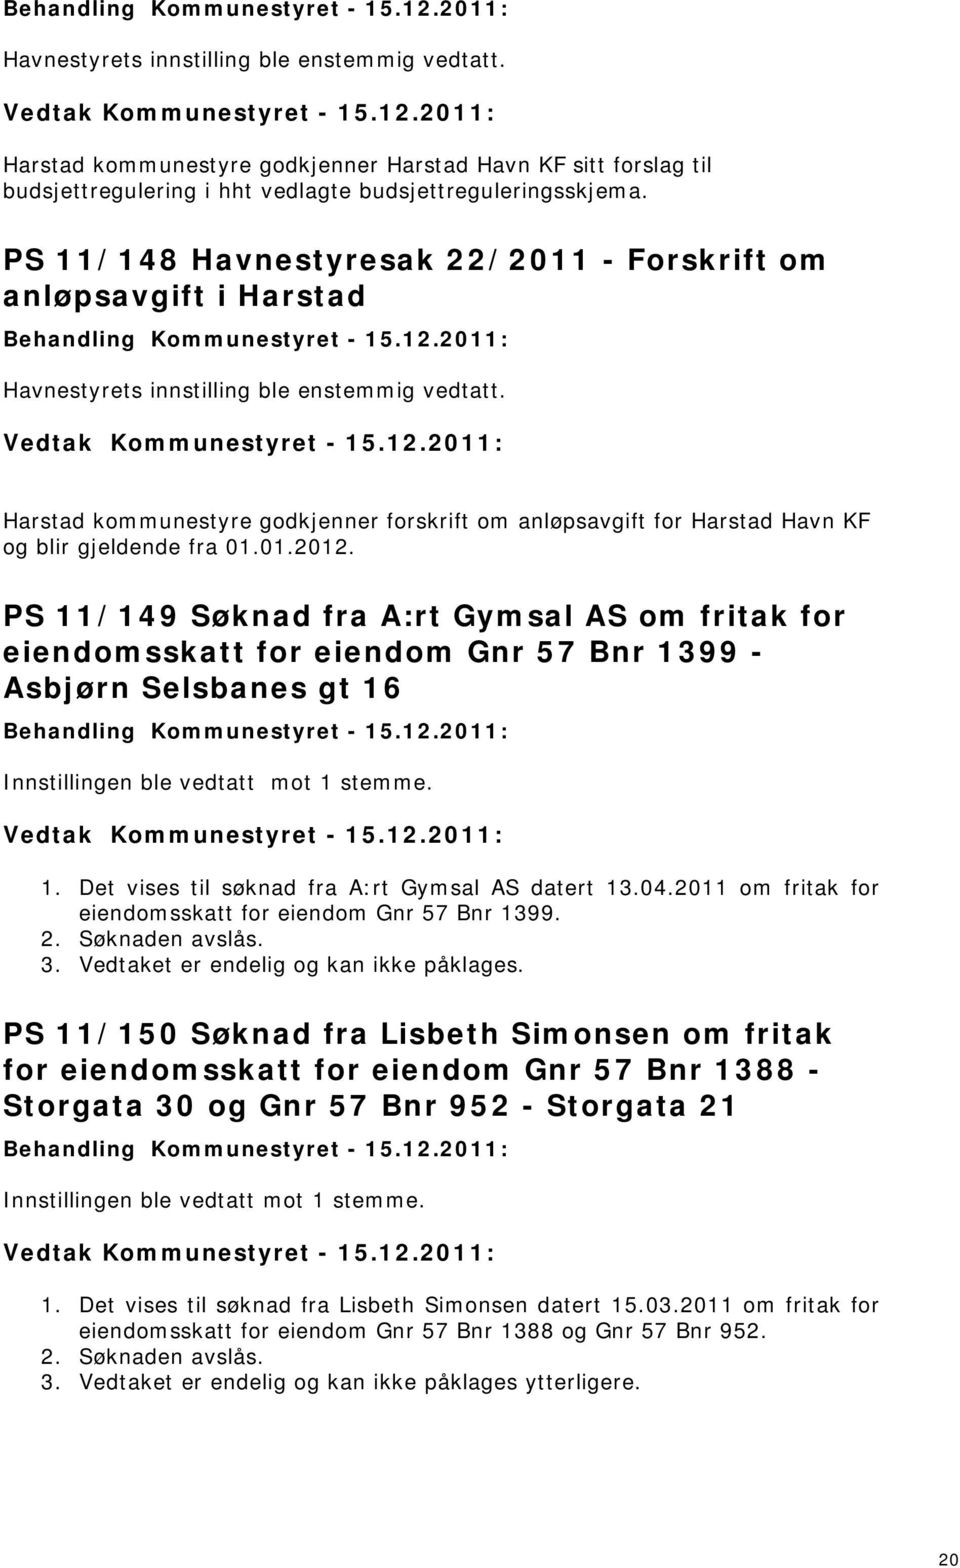 Harstad kommunestyre godkjenner forskrift om anløpsavgift for Harstad Havn KF og blir gjeldende fra 01.01.2012.